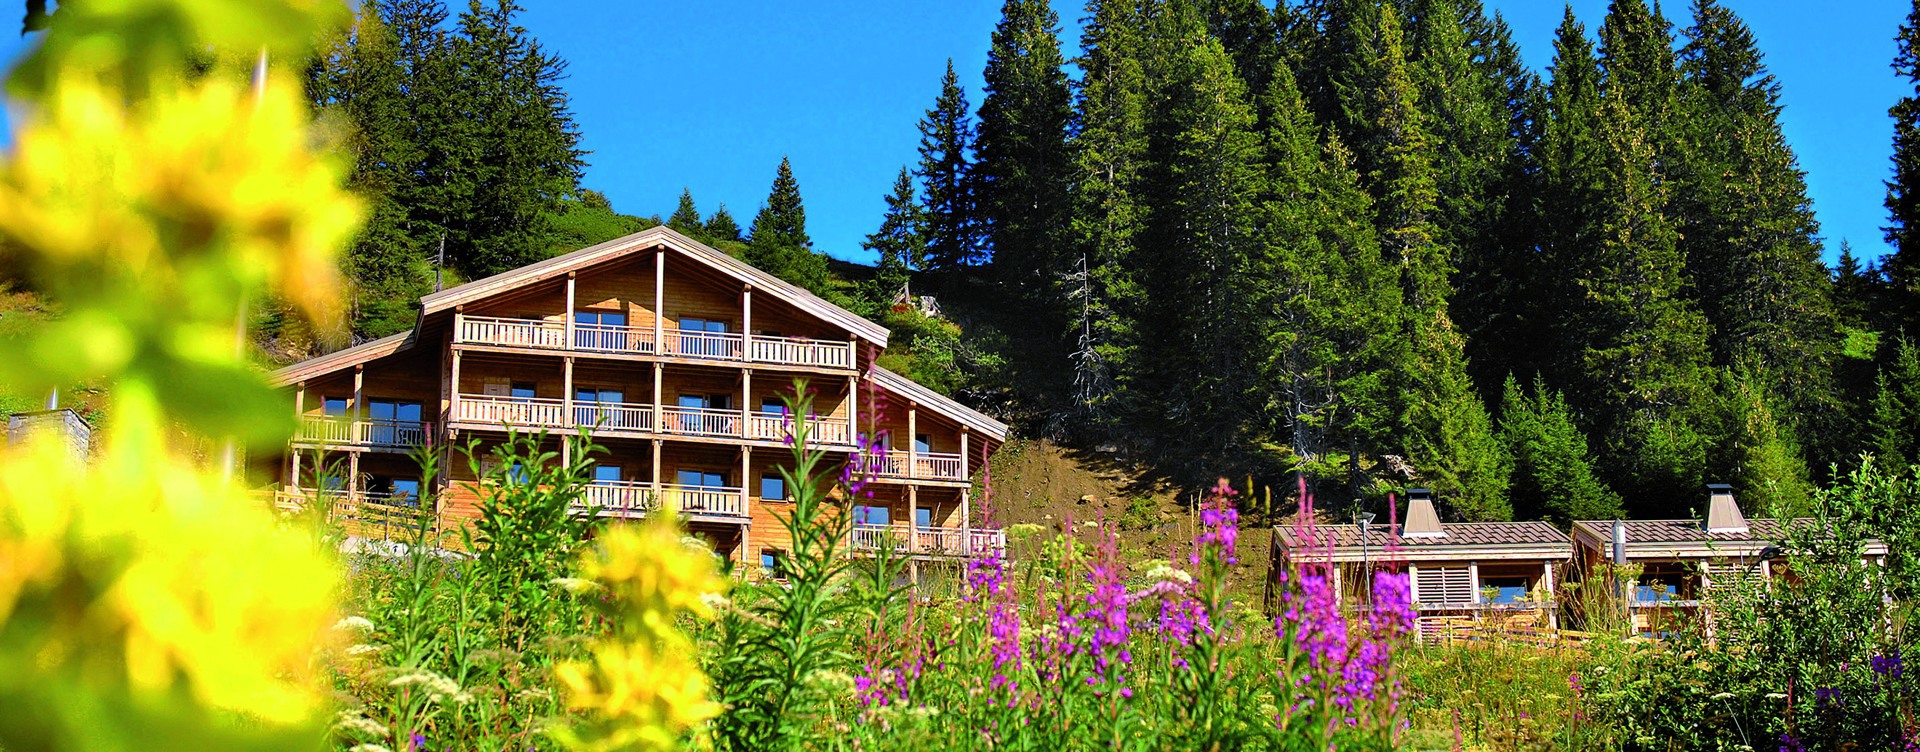 Beleef een heerlijke vakantie in de Franse Alpen